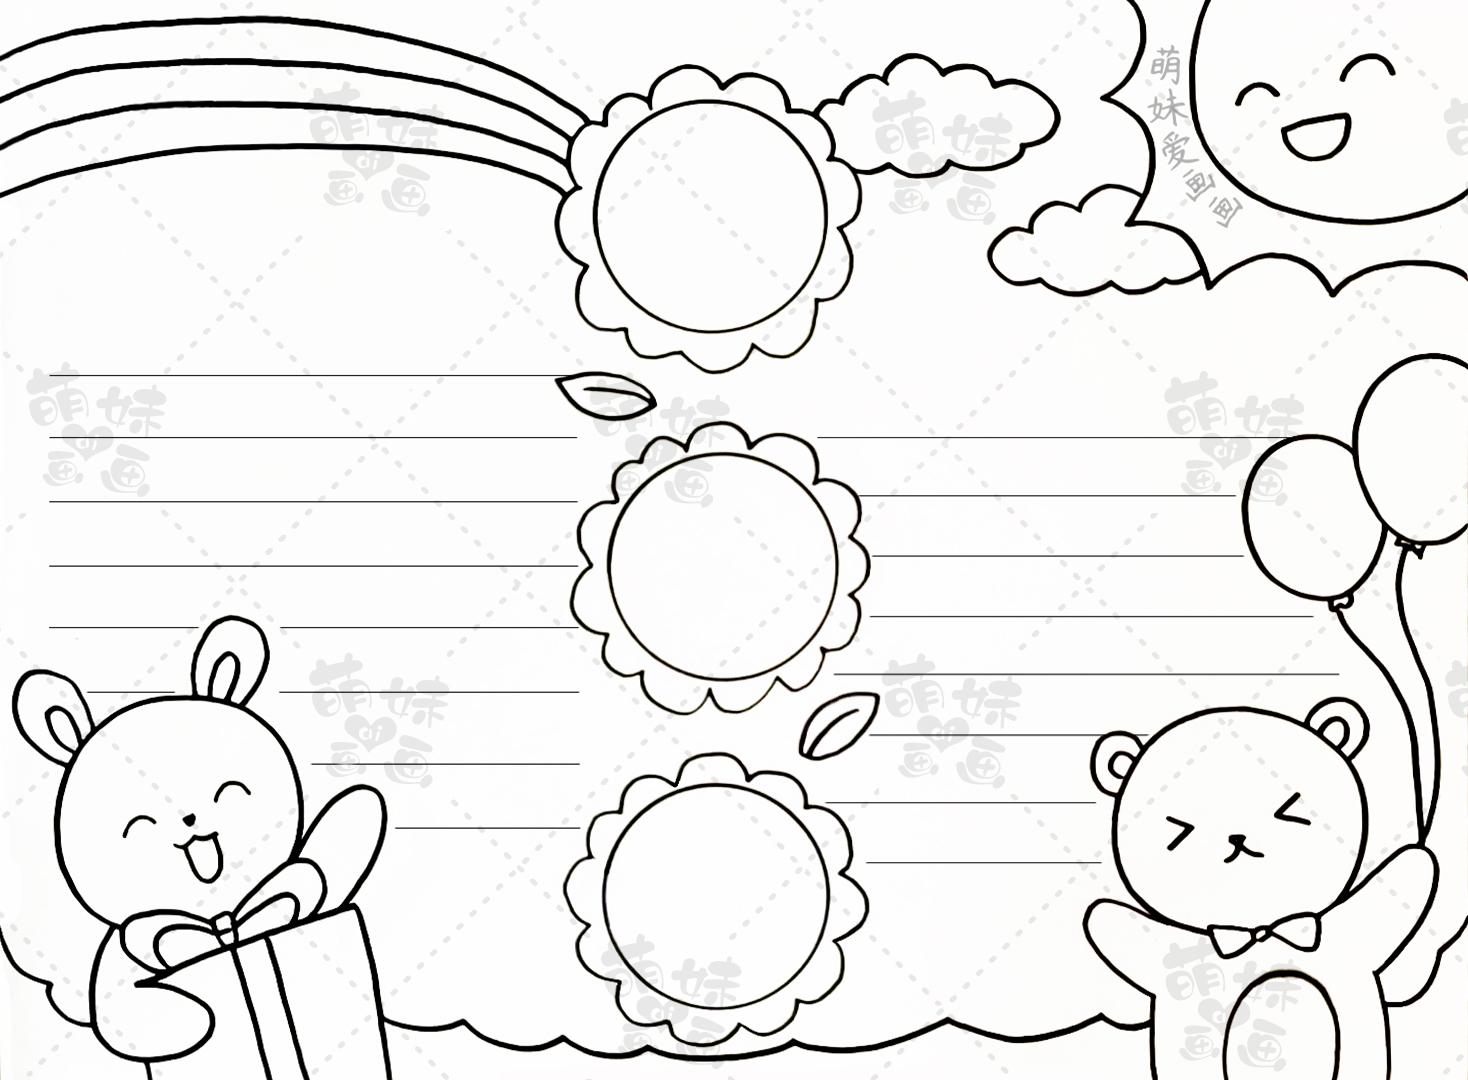 简单的六一儿童节手抄报模板,含内容文字,儿童节主题绘画合集